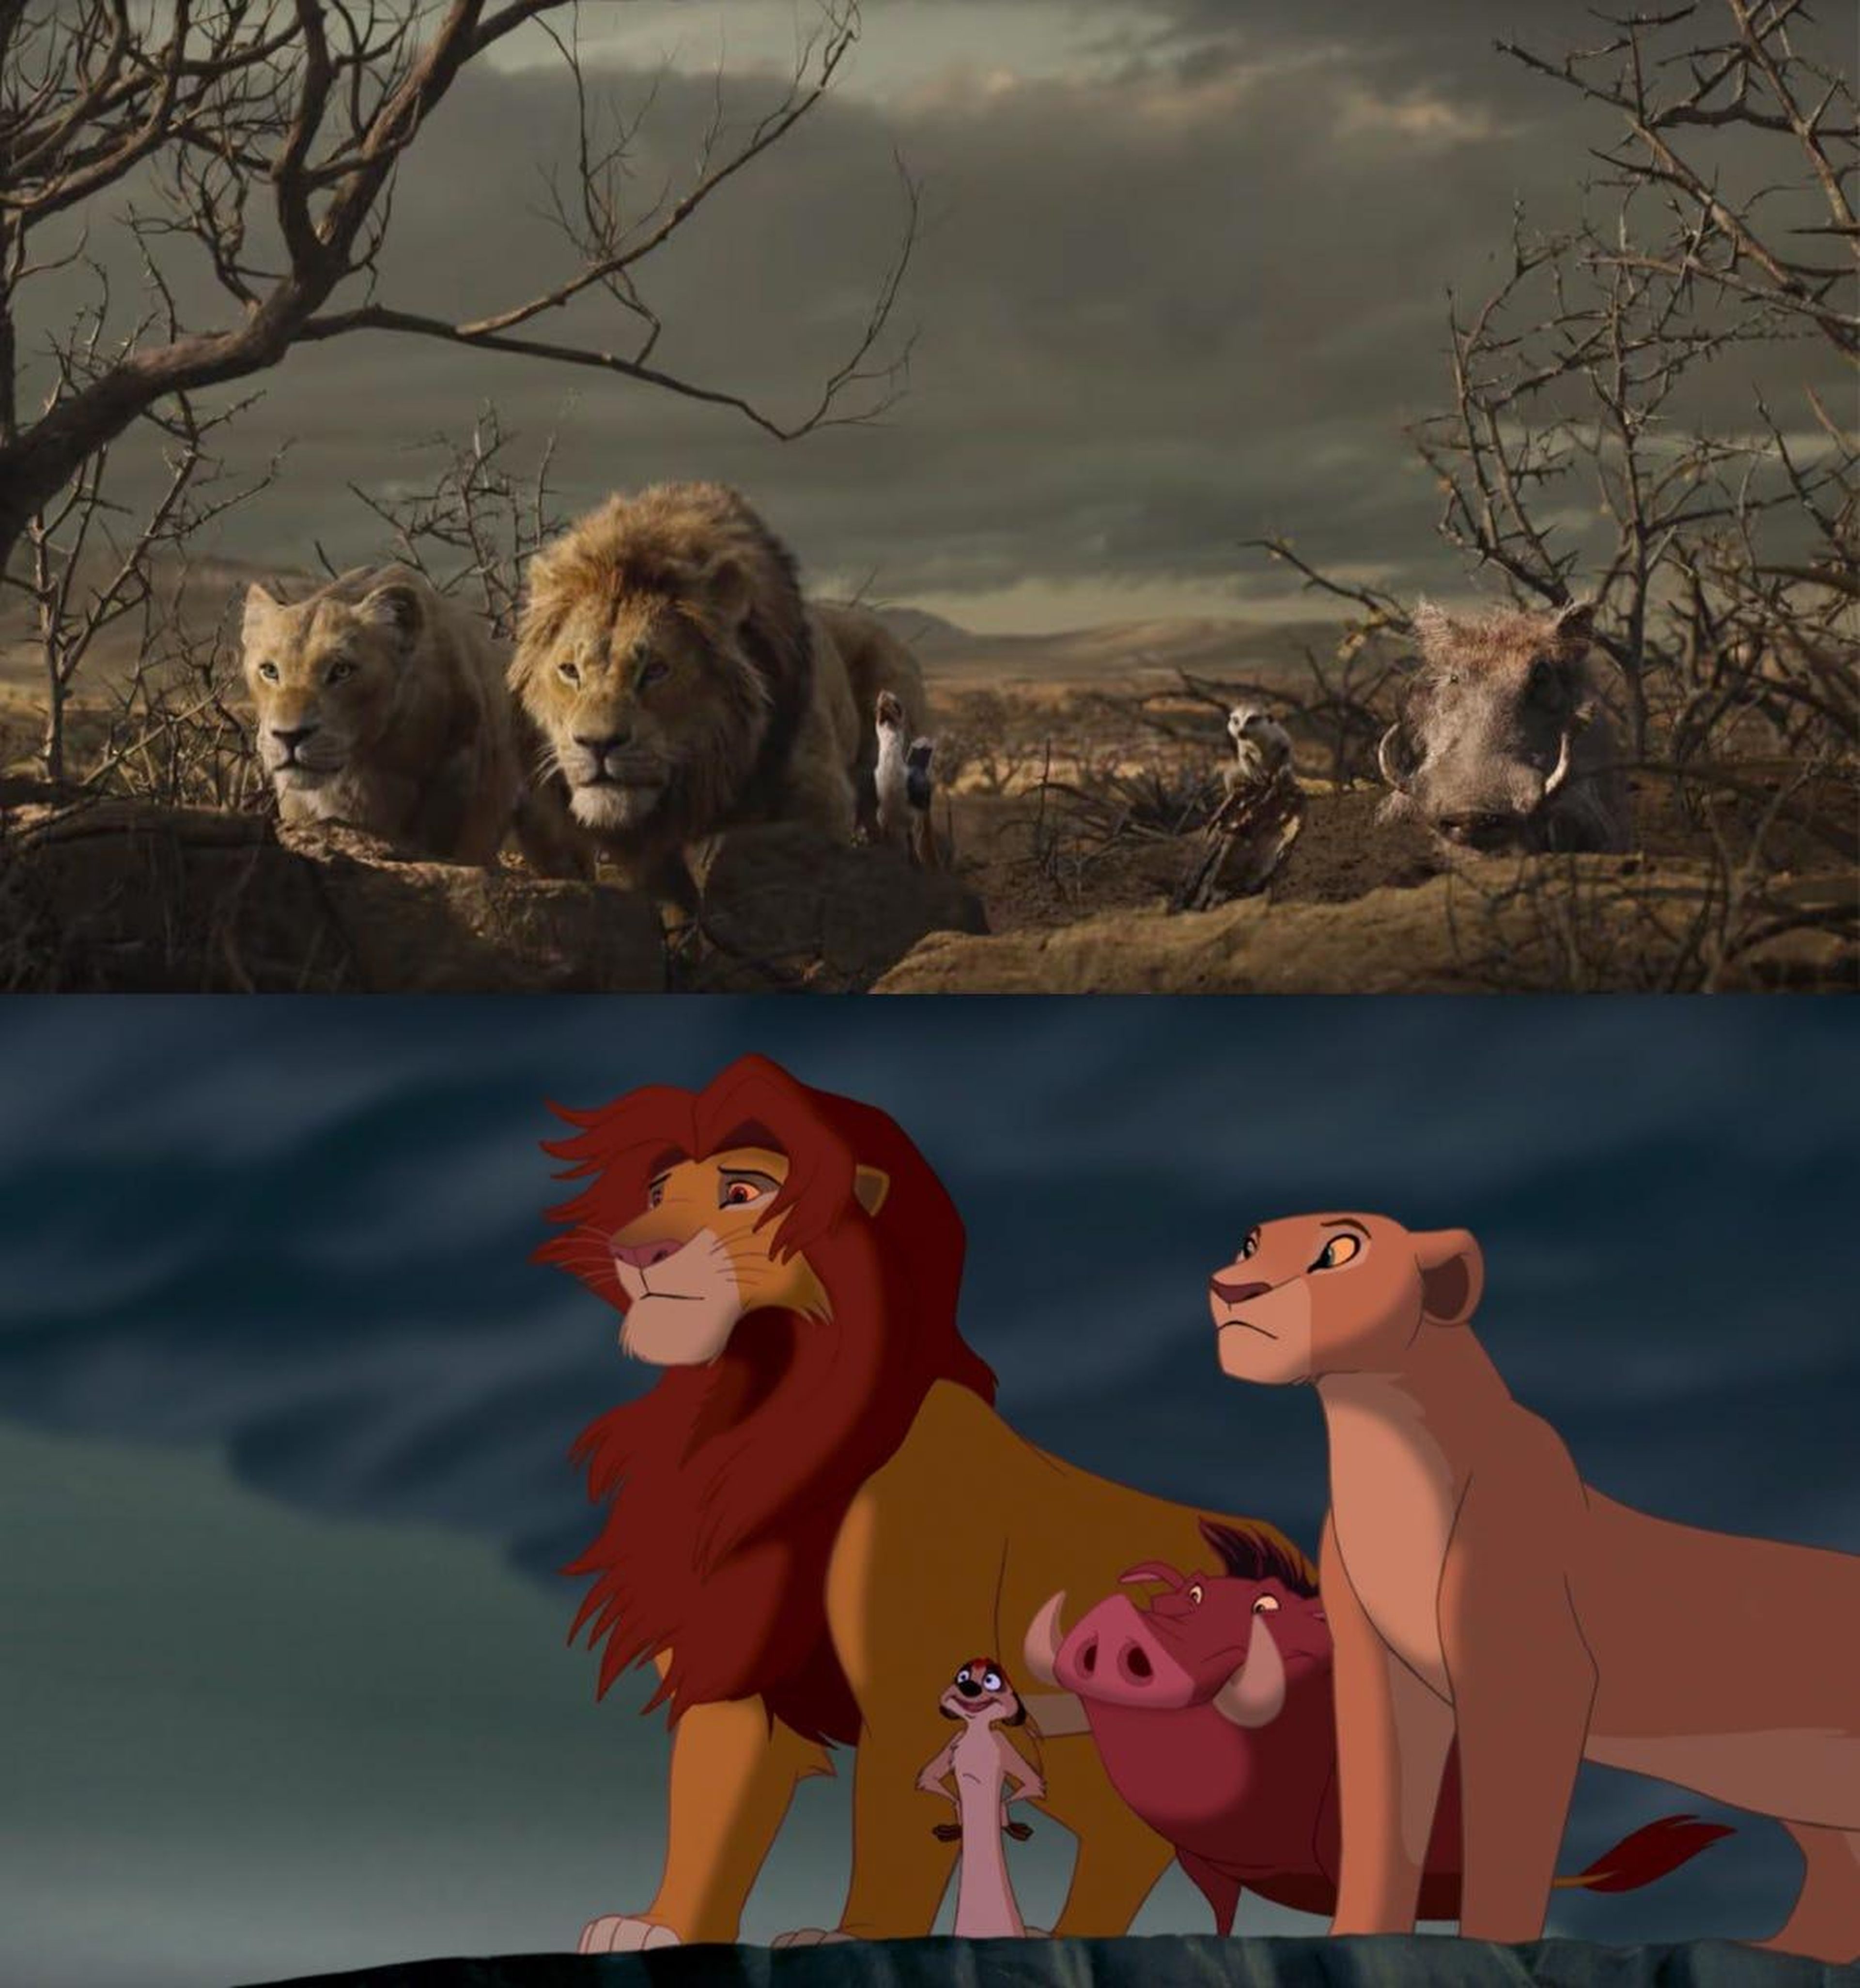 Un vistazo al remake CG de "El Rey León" junto al original animado.